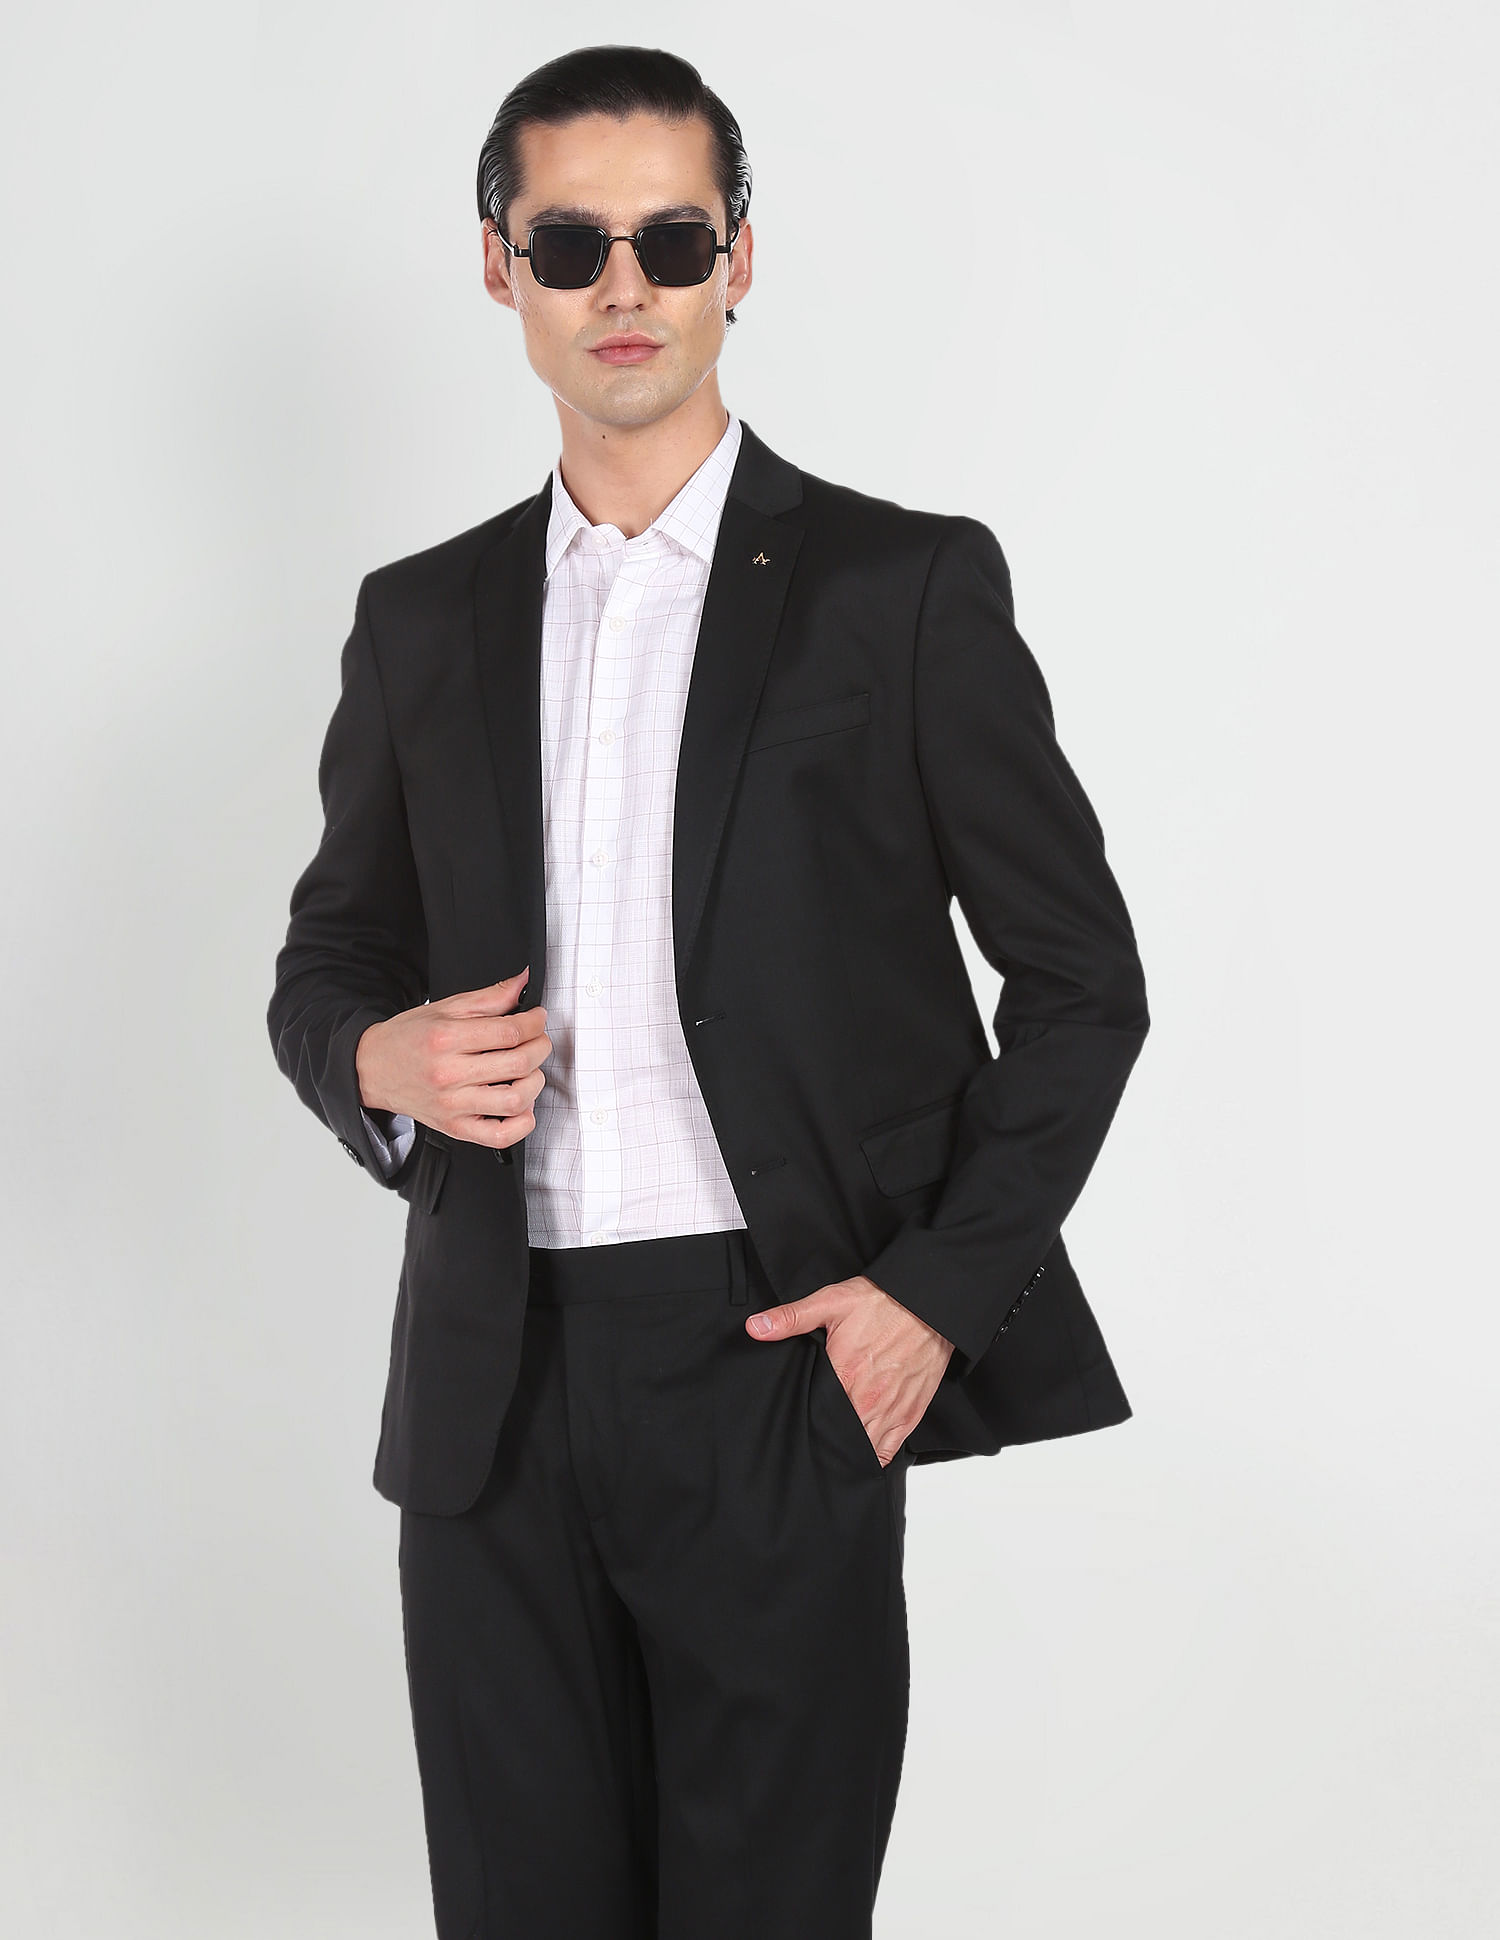 Black Tie, No Tux? No Problem! | He Spoke Style